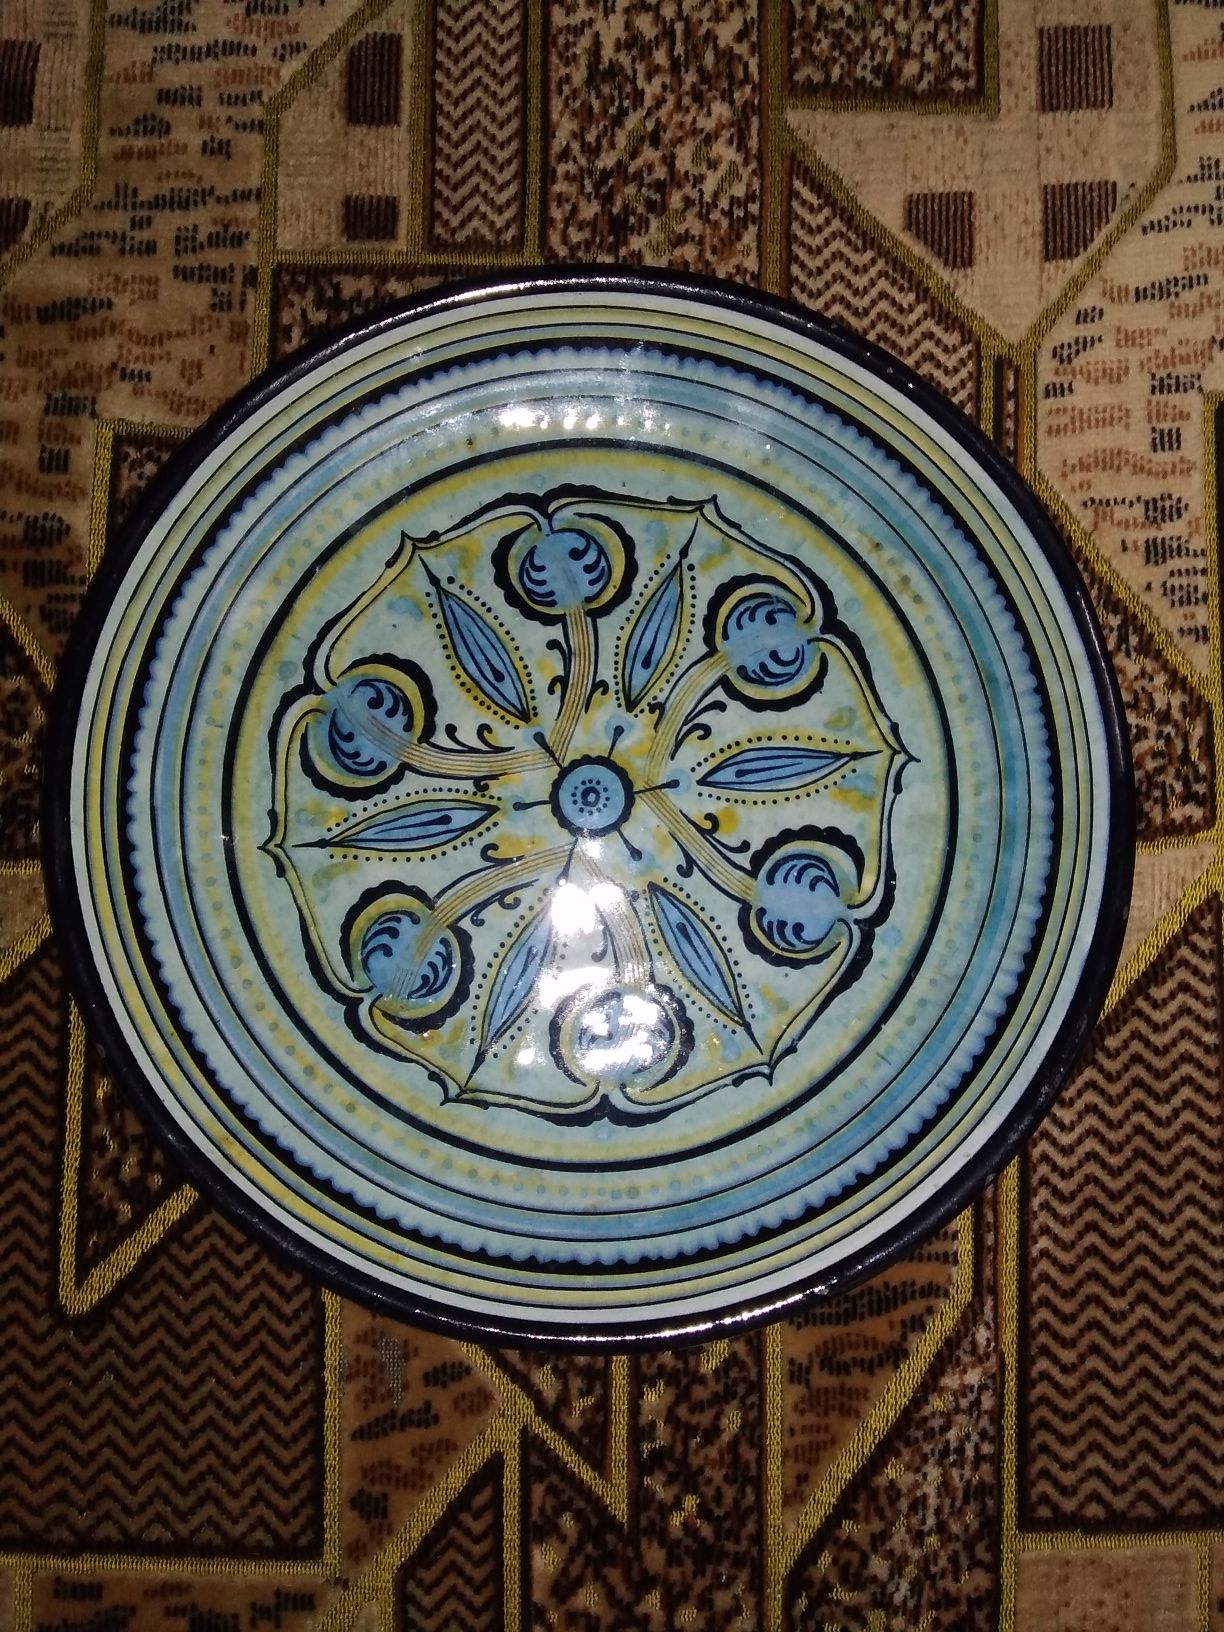 Тарелка керамическая